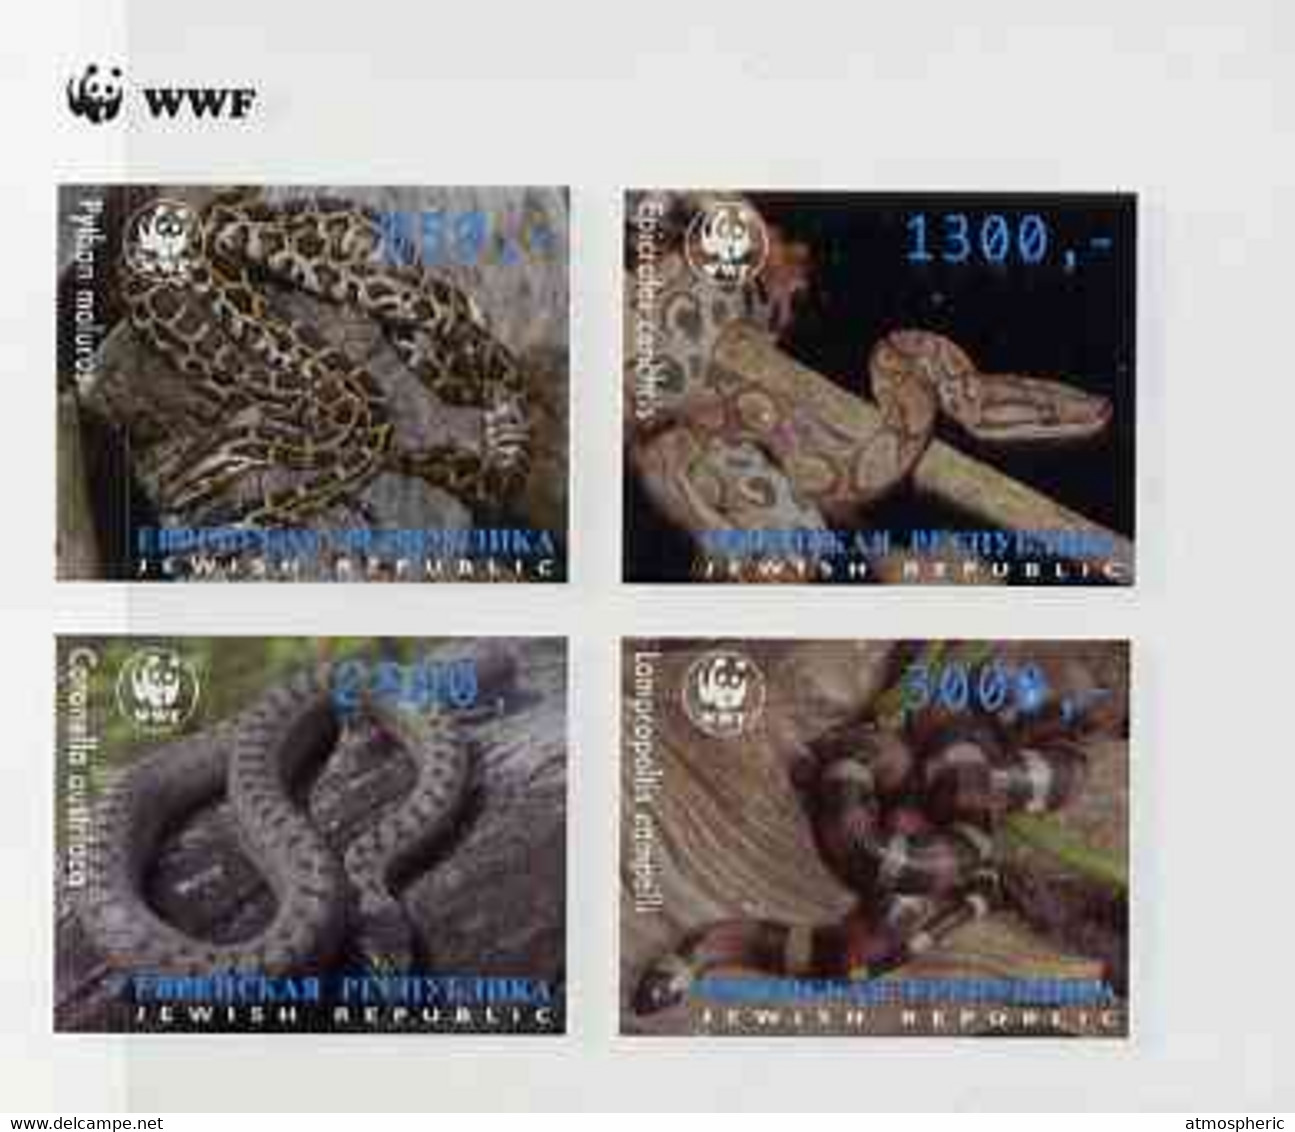 Jewish Republic 1997 WWF - Snakes Imperf Sheetlet Containing Complete Set Of 4 U/M - République Sociale Fédérative Soviétique